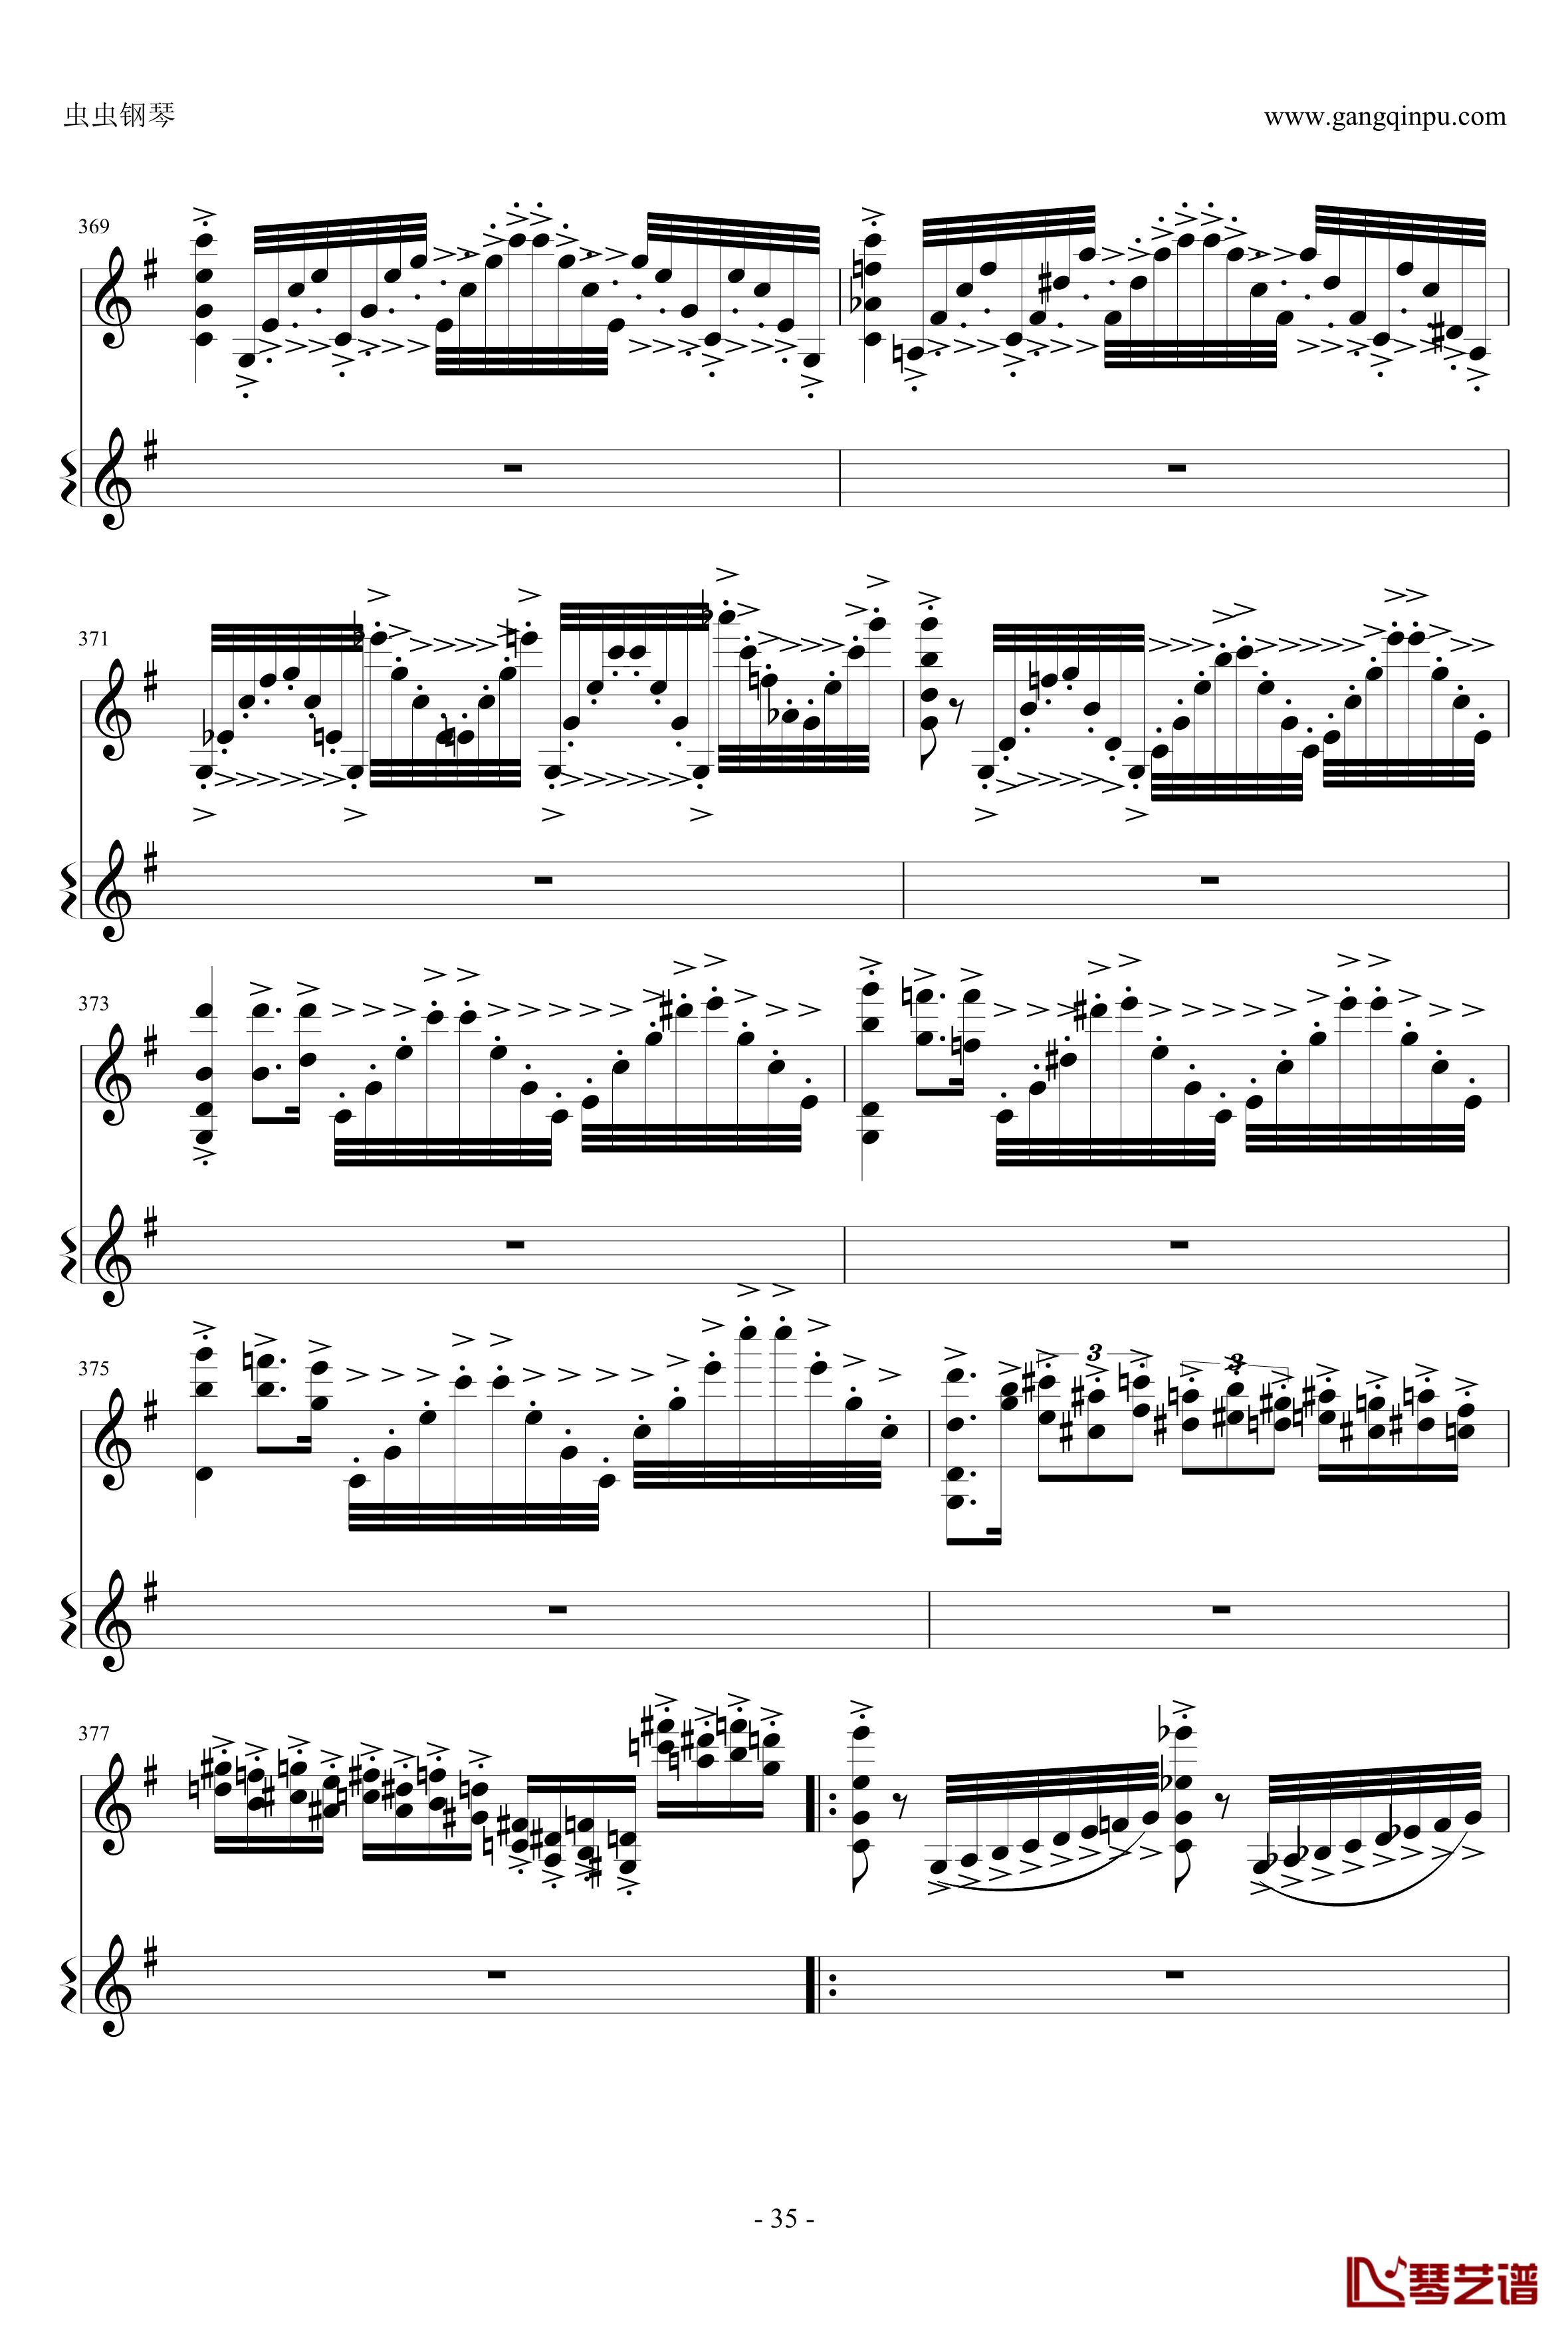 意大利国歌钢琴谱-变奏曲修改版-DXF35